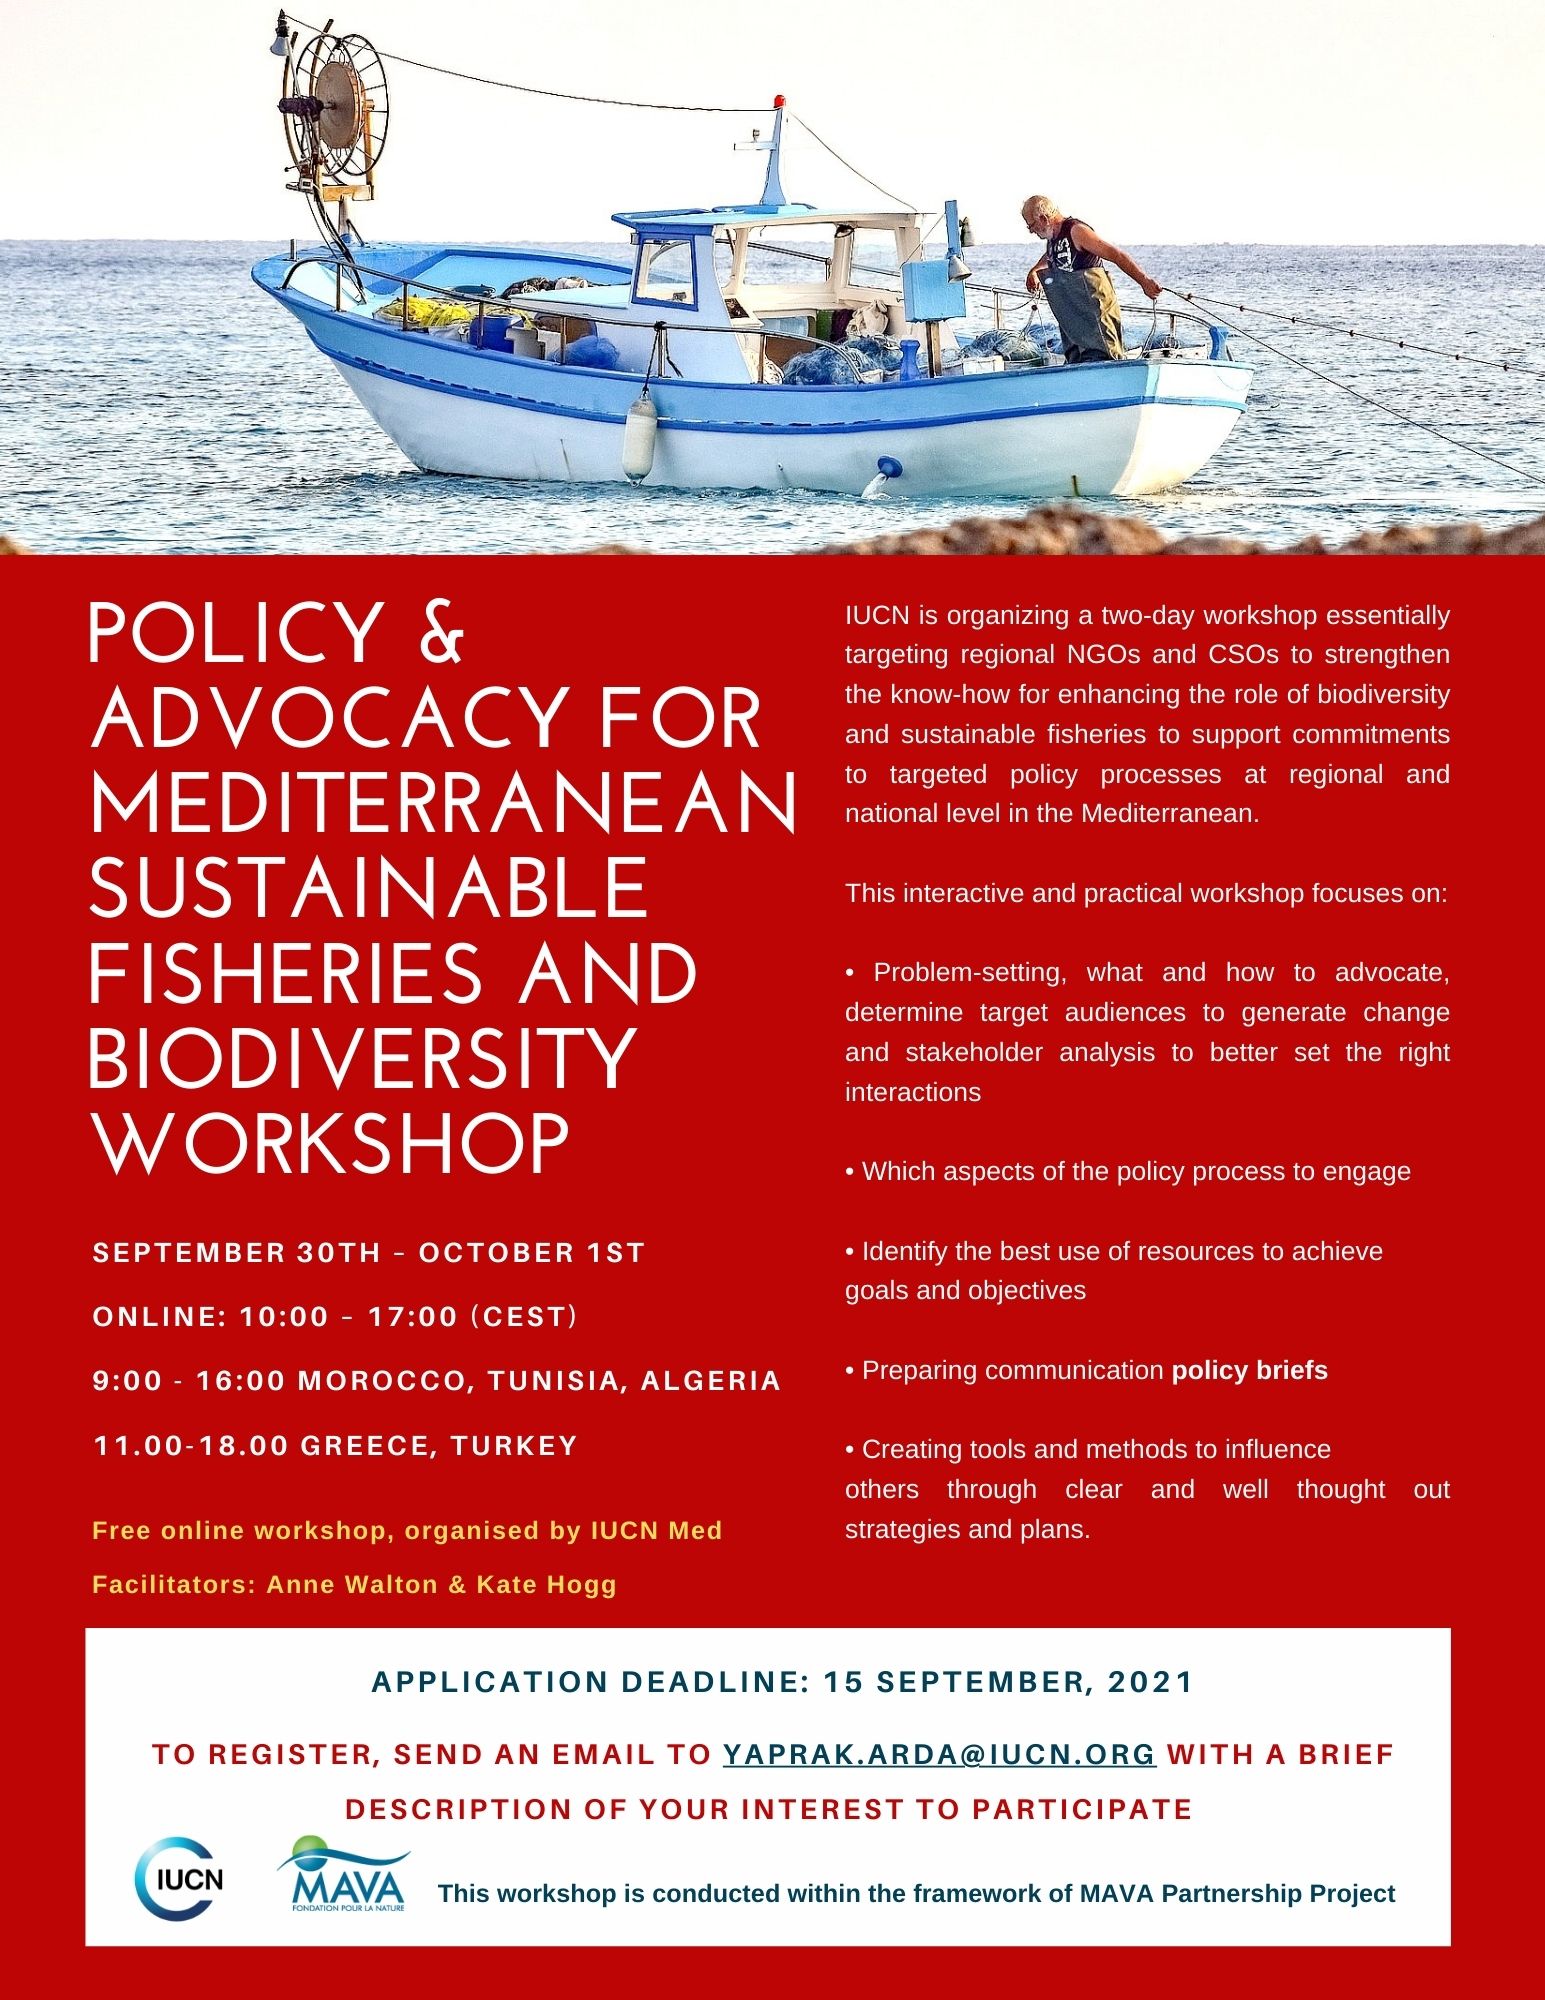 sustainable fisheries workshop iucn mediterranean